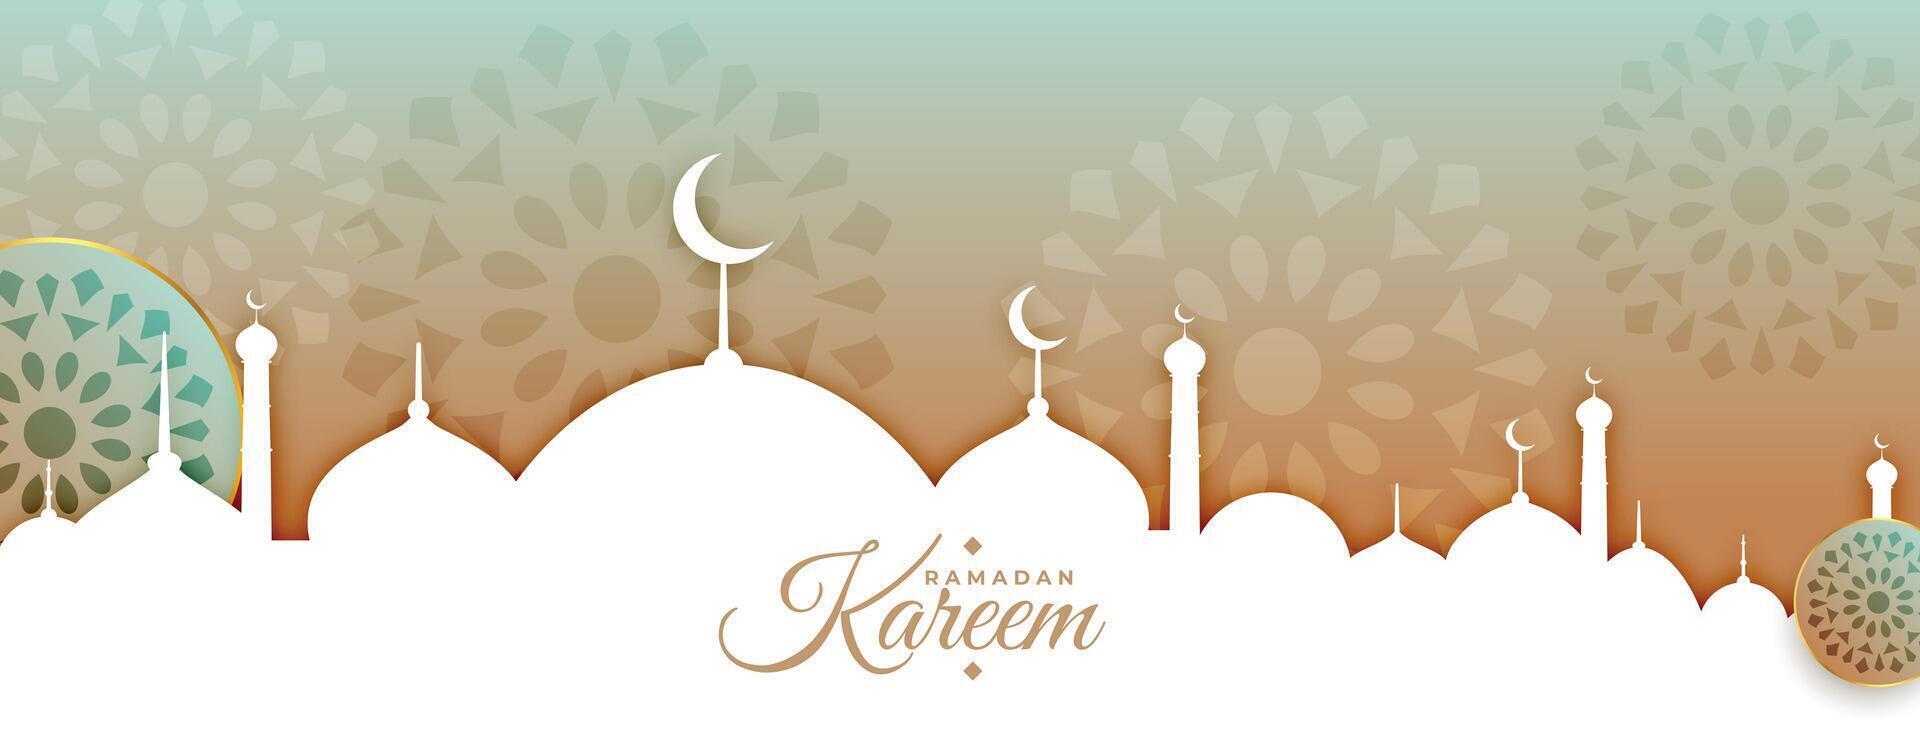 arabic style ramadan kareem or eid mubarak banner design vector